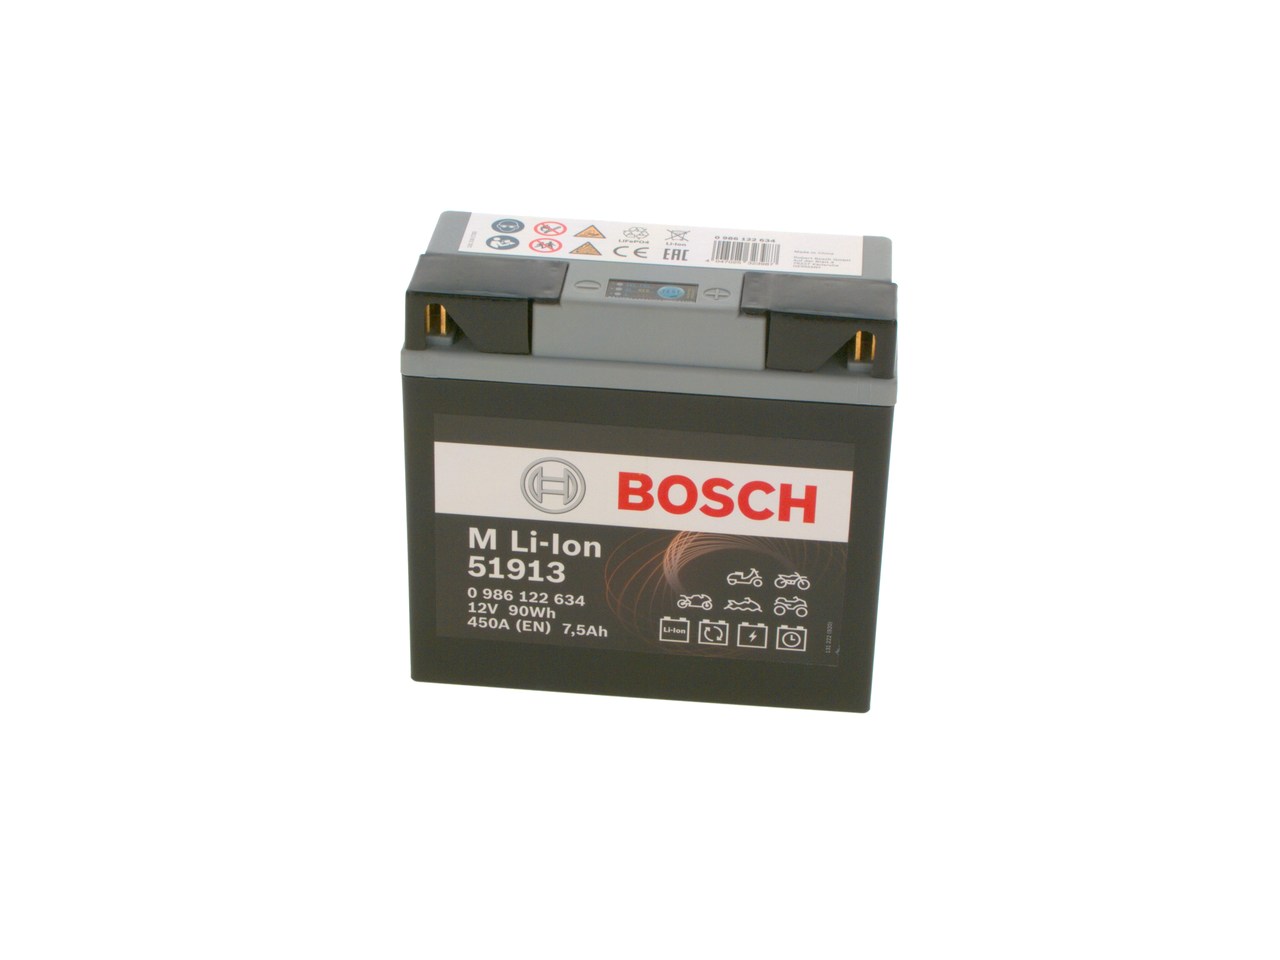 YAMAHA TMAX Batterie 12V 7,5Ah 450A B00 Li-Ionen-Batterie BOSCH 0986122634